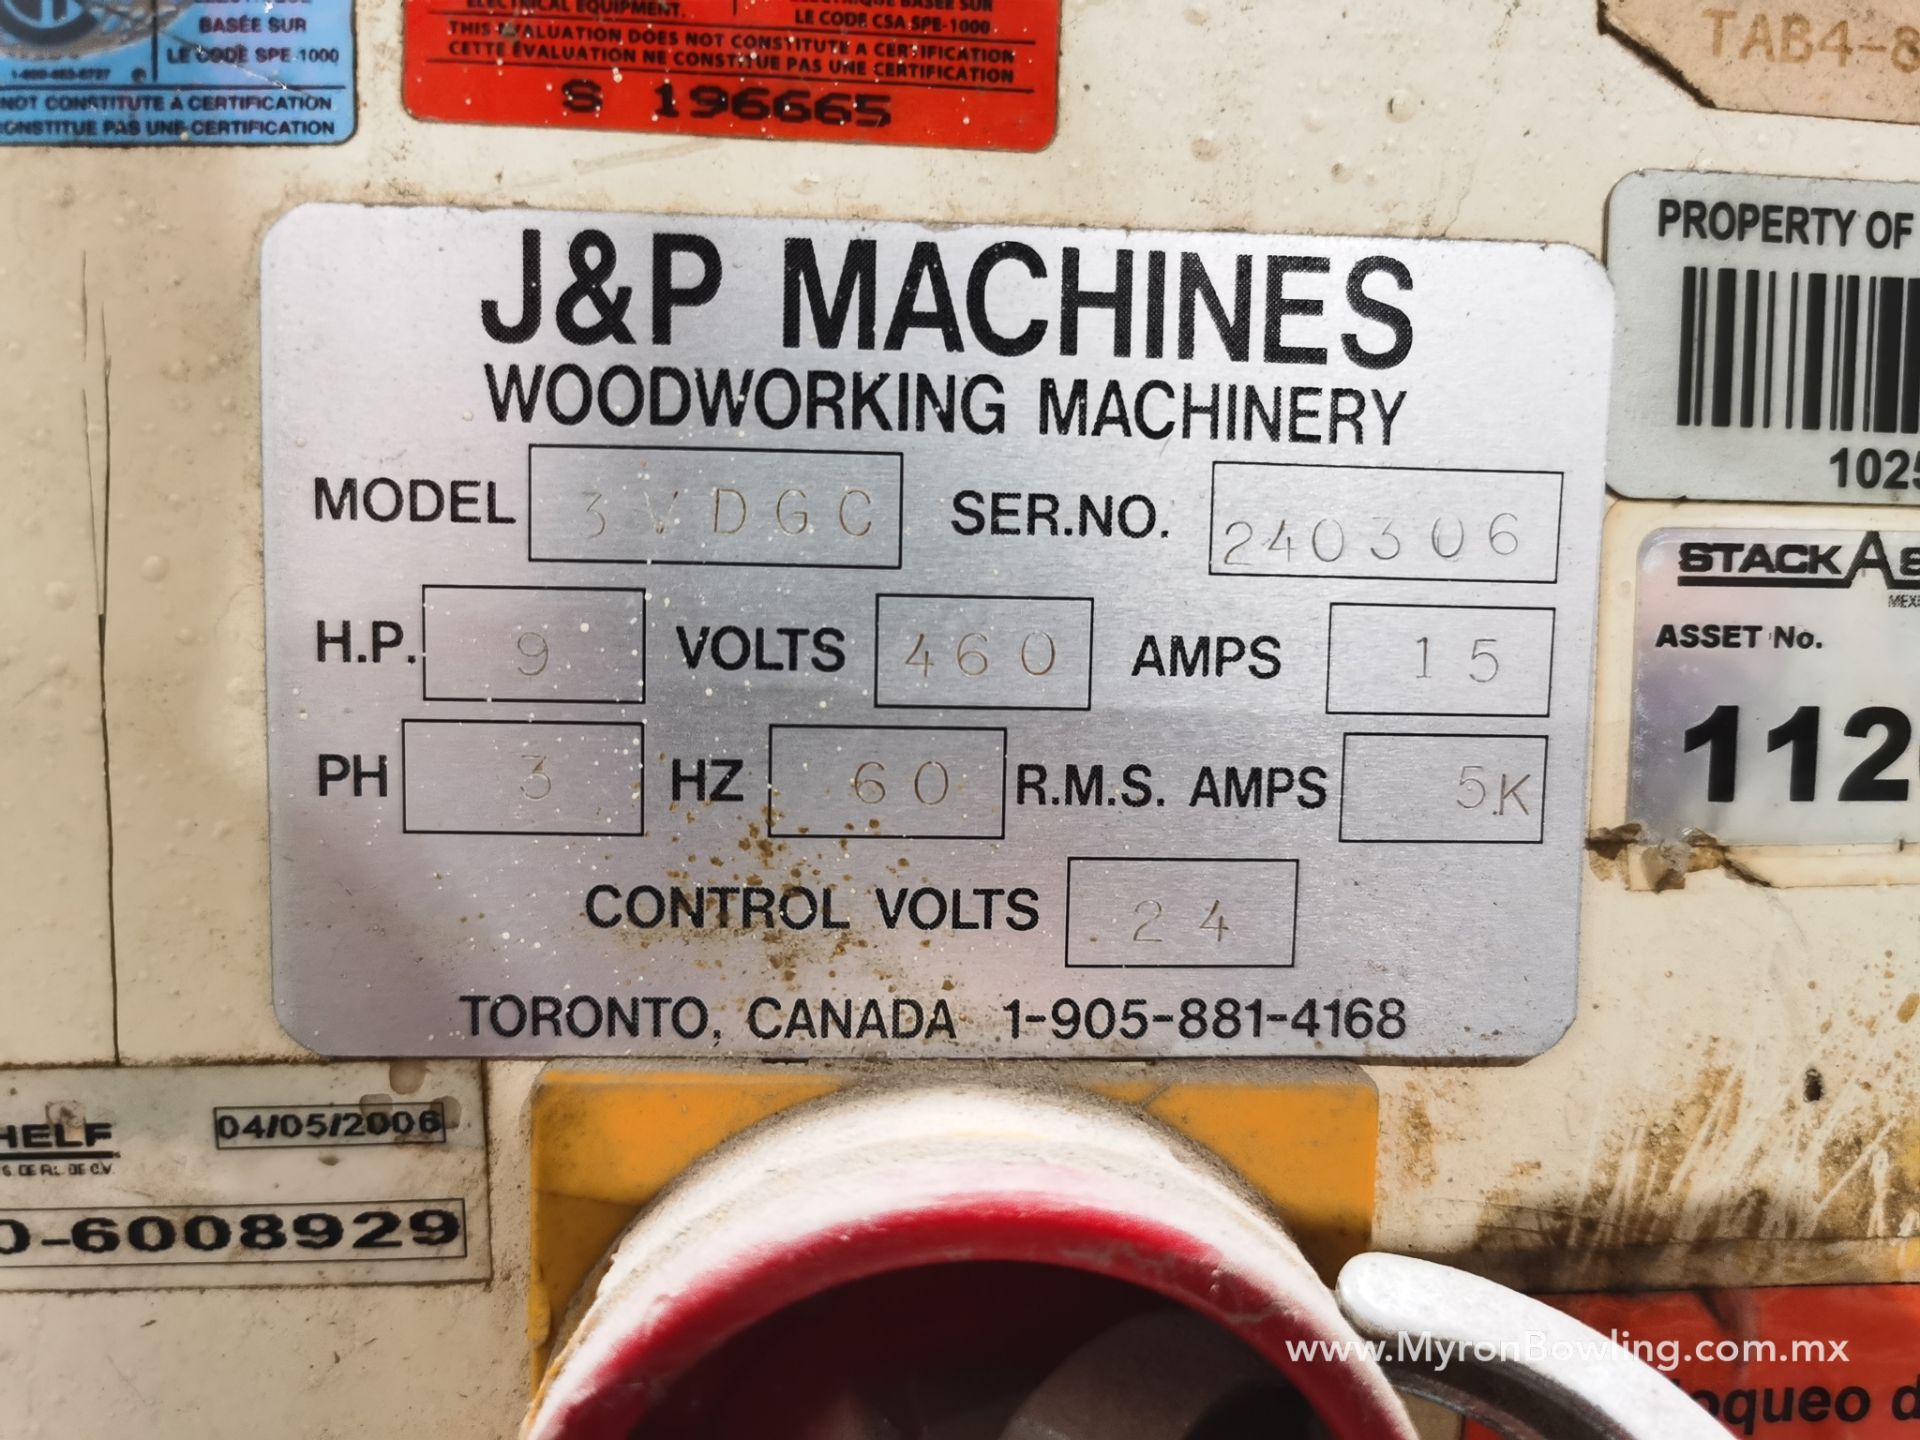 J&P Drawer Front Boring Machine, Model 3VDGC, S/N 240306, 460 V / 60 Hz, ASSET NUMBER 11208. - Image 10 of 23